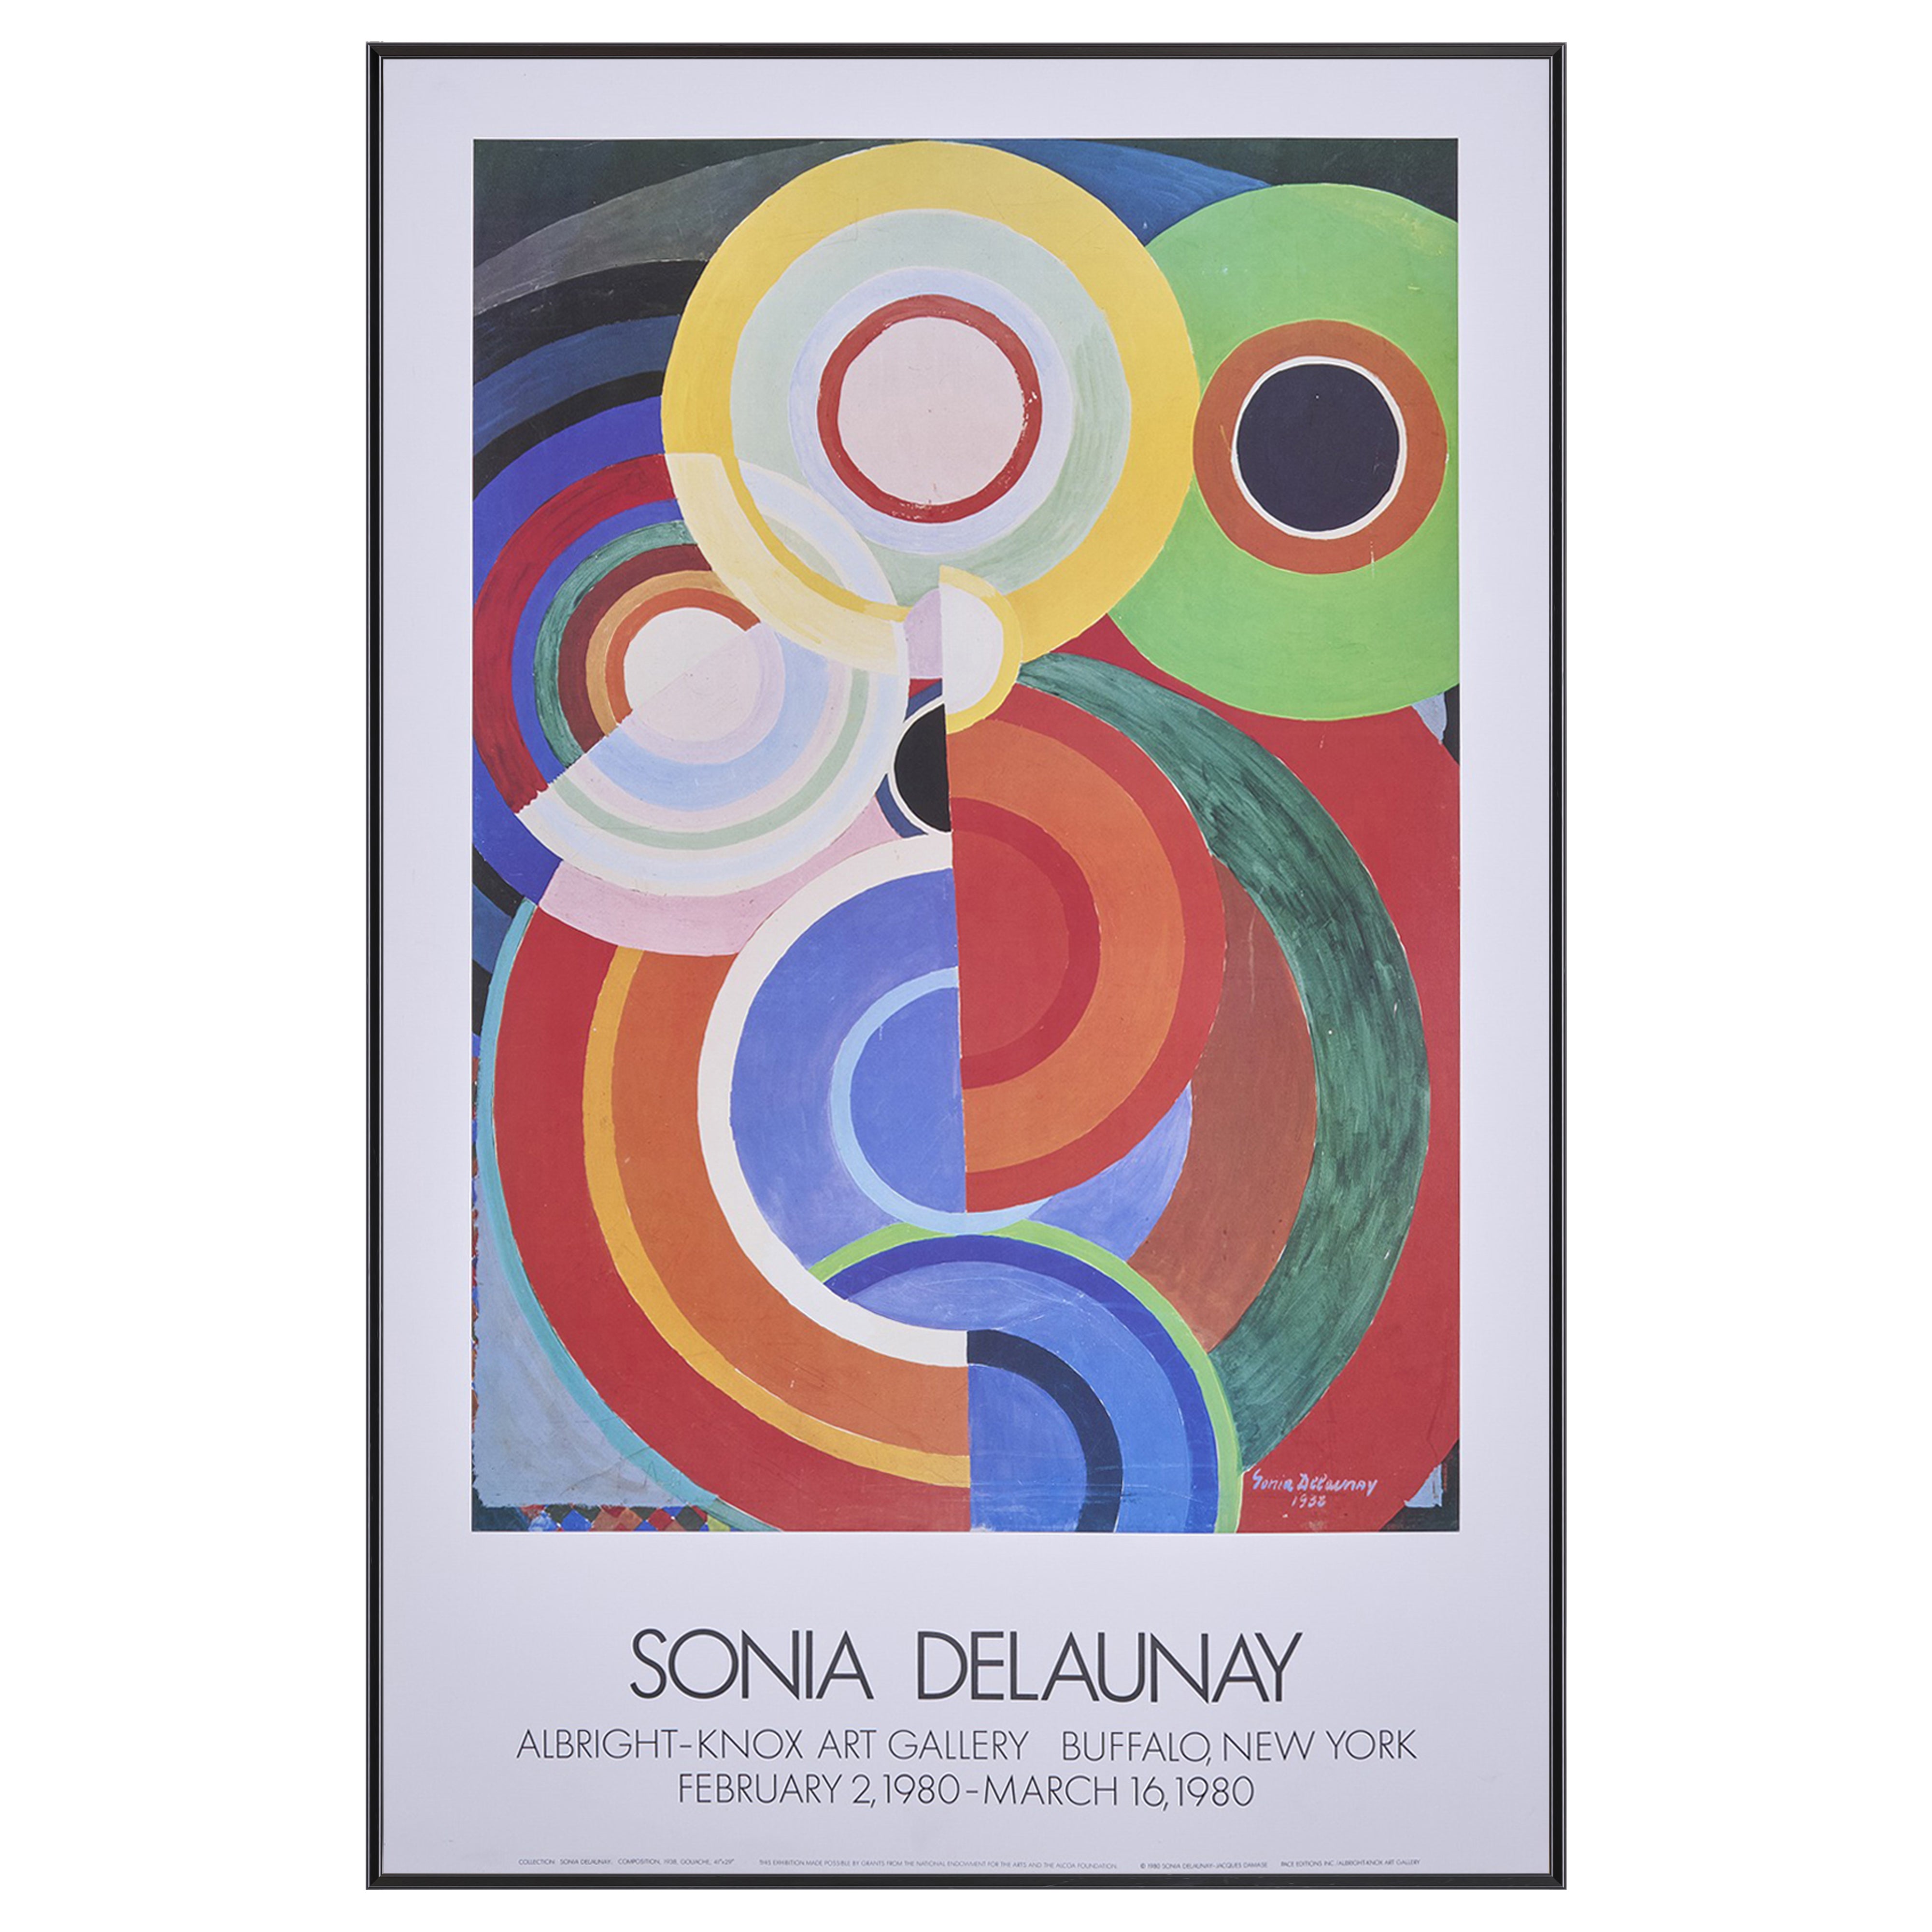 【限定10枚】SONIA DELAUNAY - ALBRIGHT KNOX ART GALLERY, NEW YORK 1980 / ソニア・ドローネー